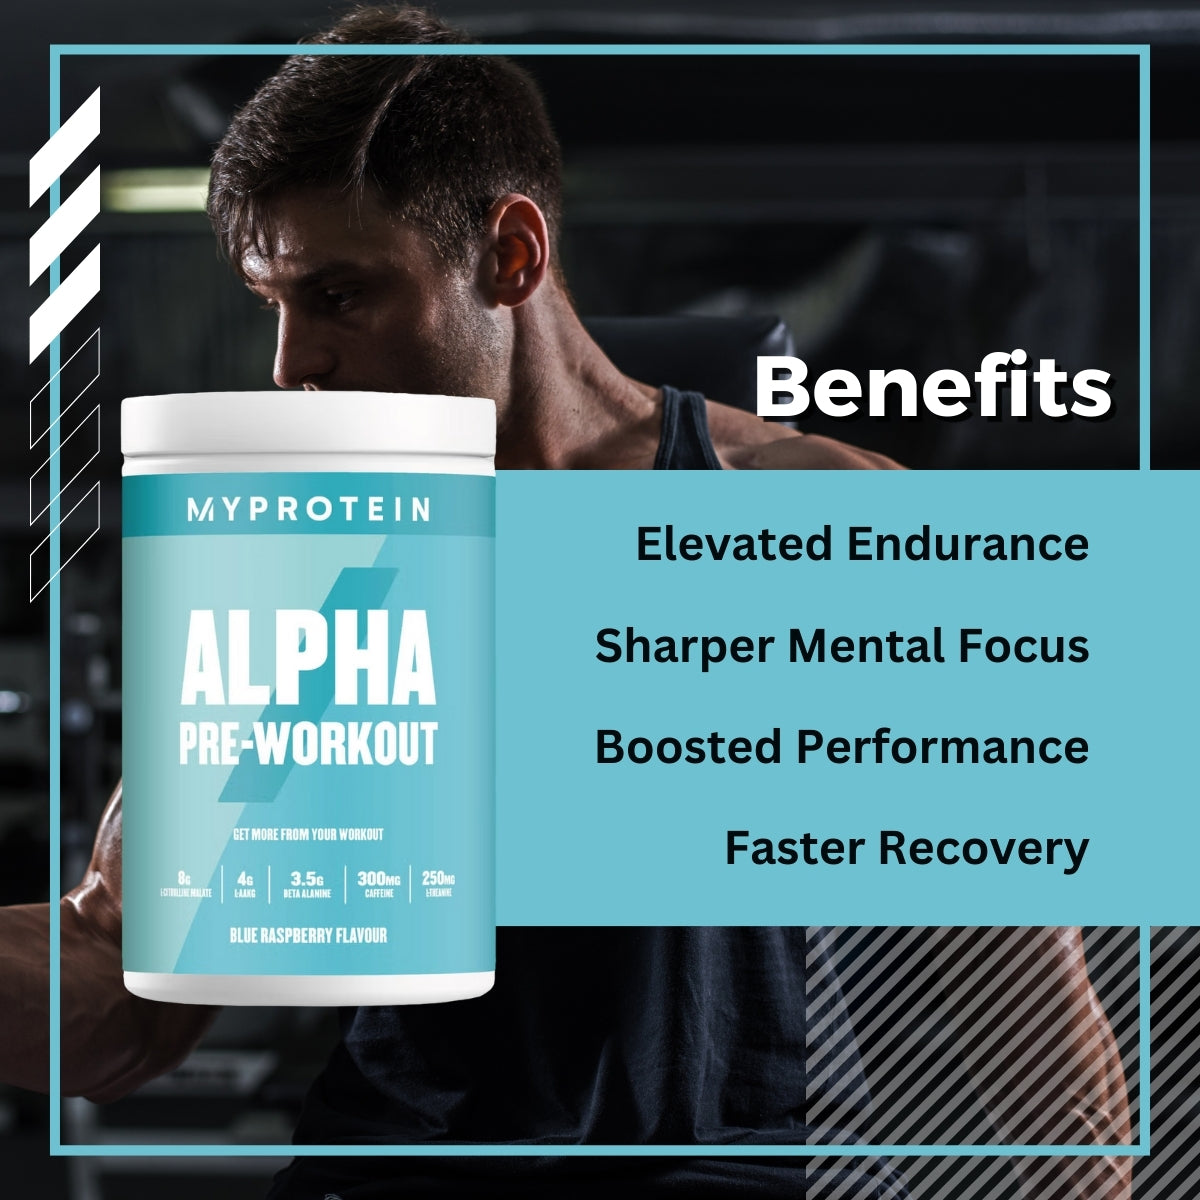 MyProtein Alpha Pre Workout - benefits